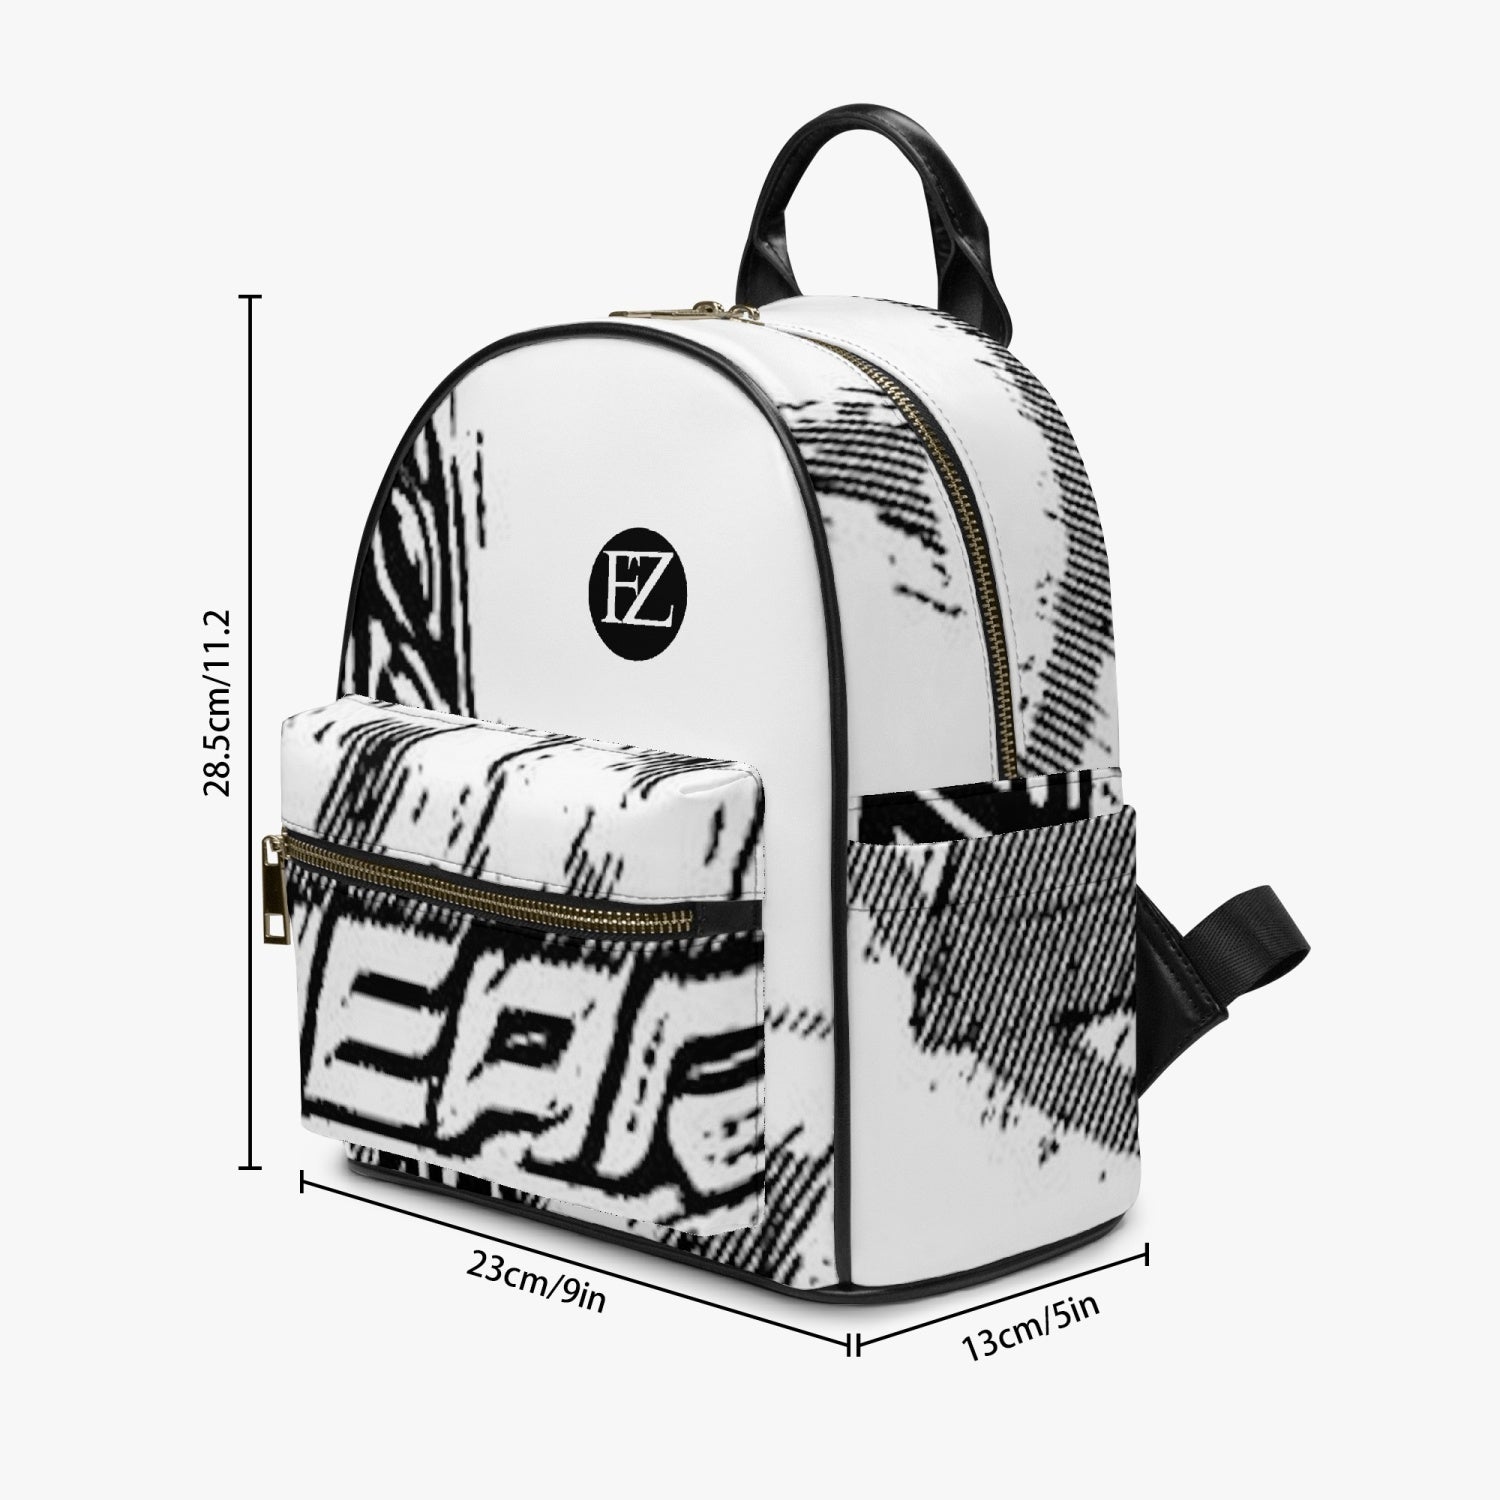 FZ Printed PU Backpack - FZwear